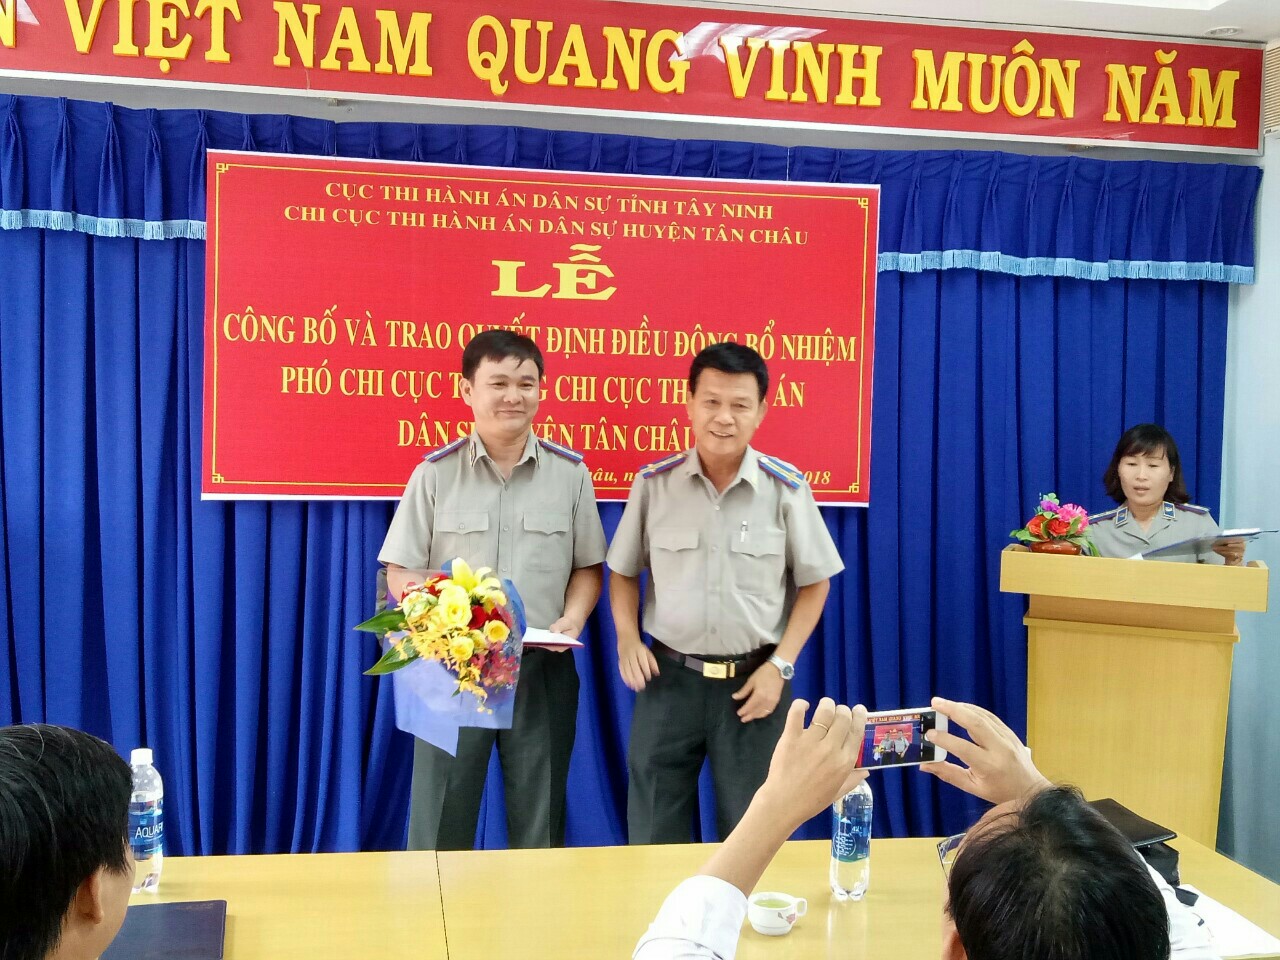 Công bố, trao Quyết định điều động Phó Chi cục trưởng Chi cục THADS huyện Tân Châu và Trưởng phòng Tổ chức cán bộ - Cục THADS tỉnh Tây Ninh